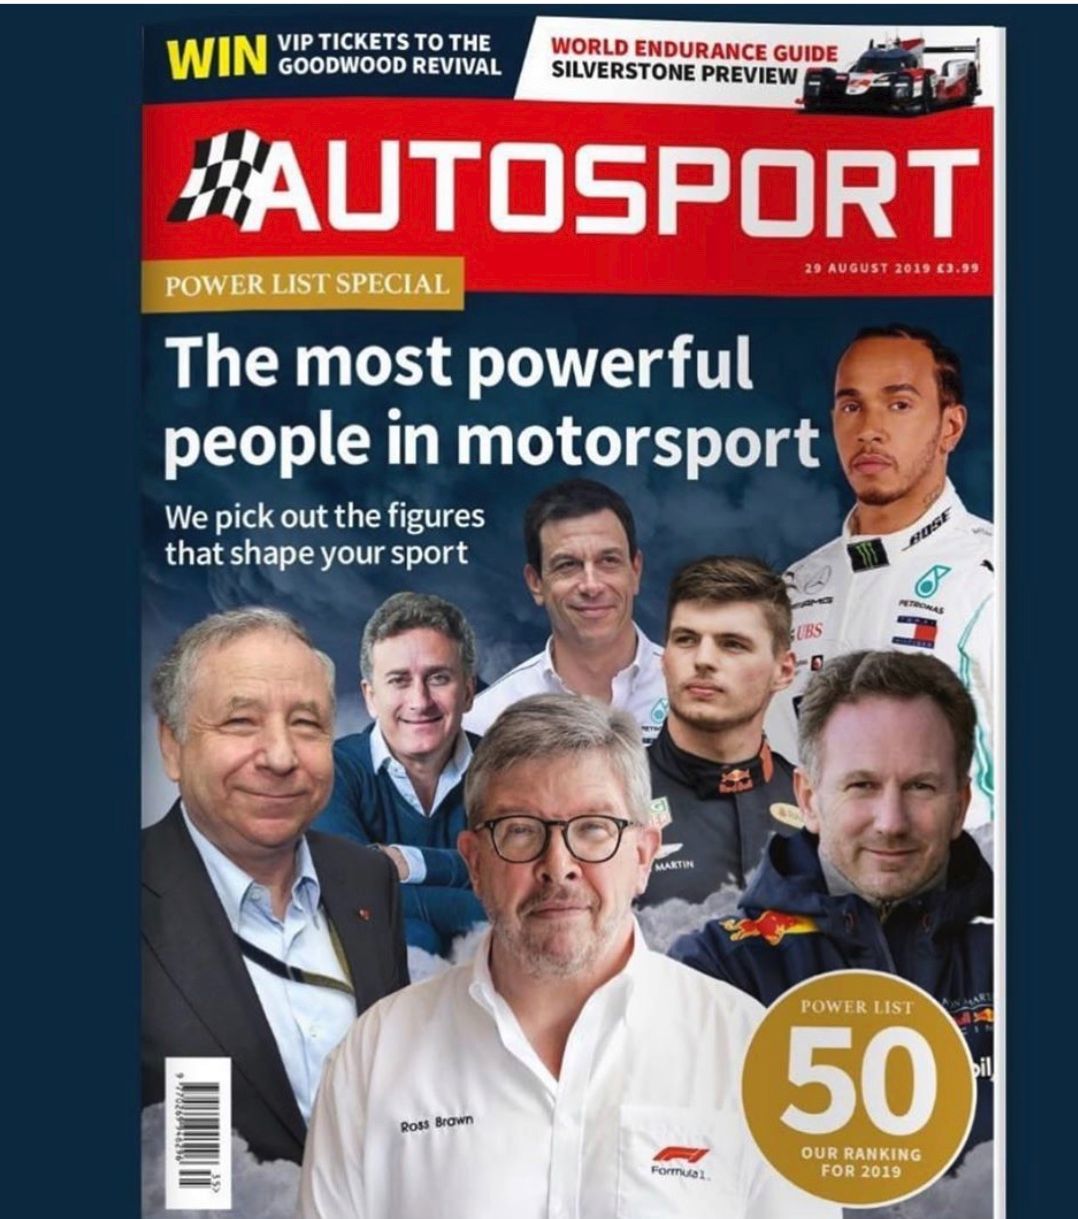 AUTOSPORT kürte die Top 50 Motorsport-Persönlichkeiten in der Welt. Mit sieben Österreichern.